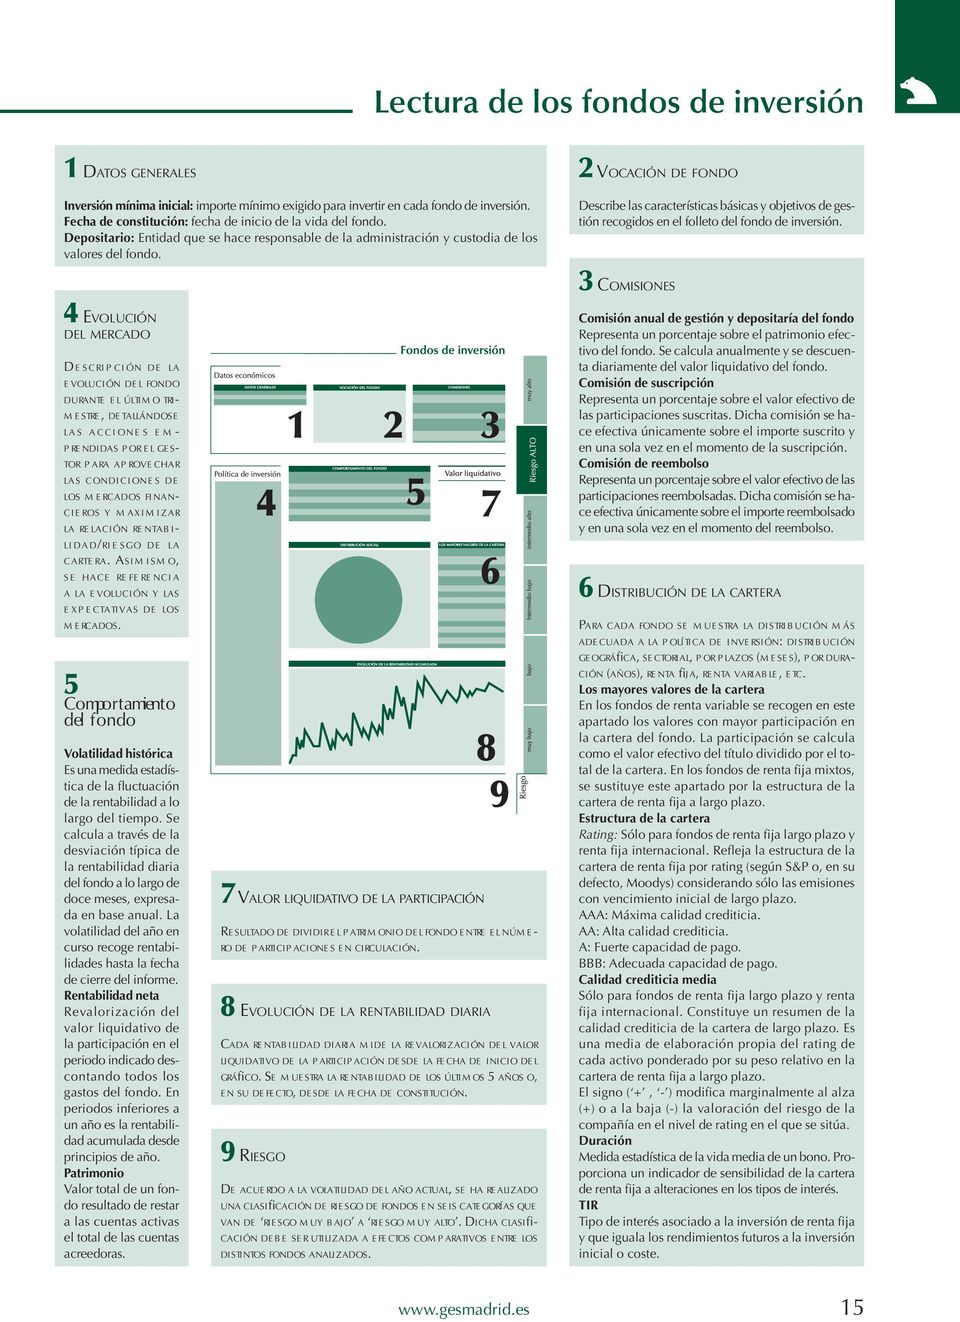 2 VOCACIÓN DE FONDO Describe las características básicas y objetivos de gestión recogidos en el folleto del fondo de inversión.